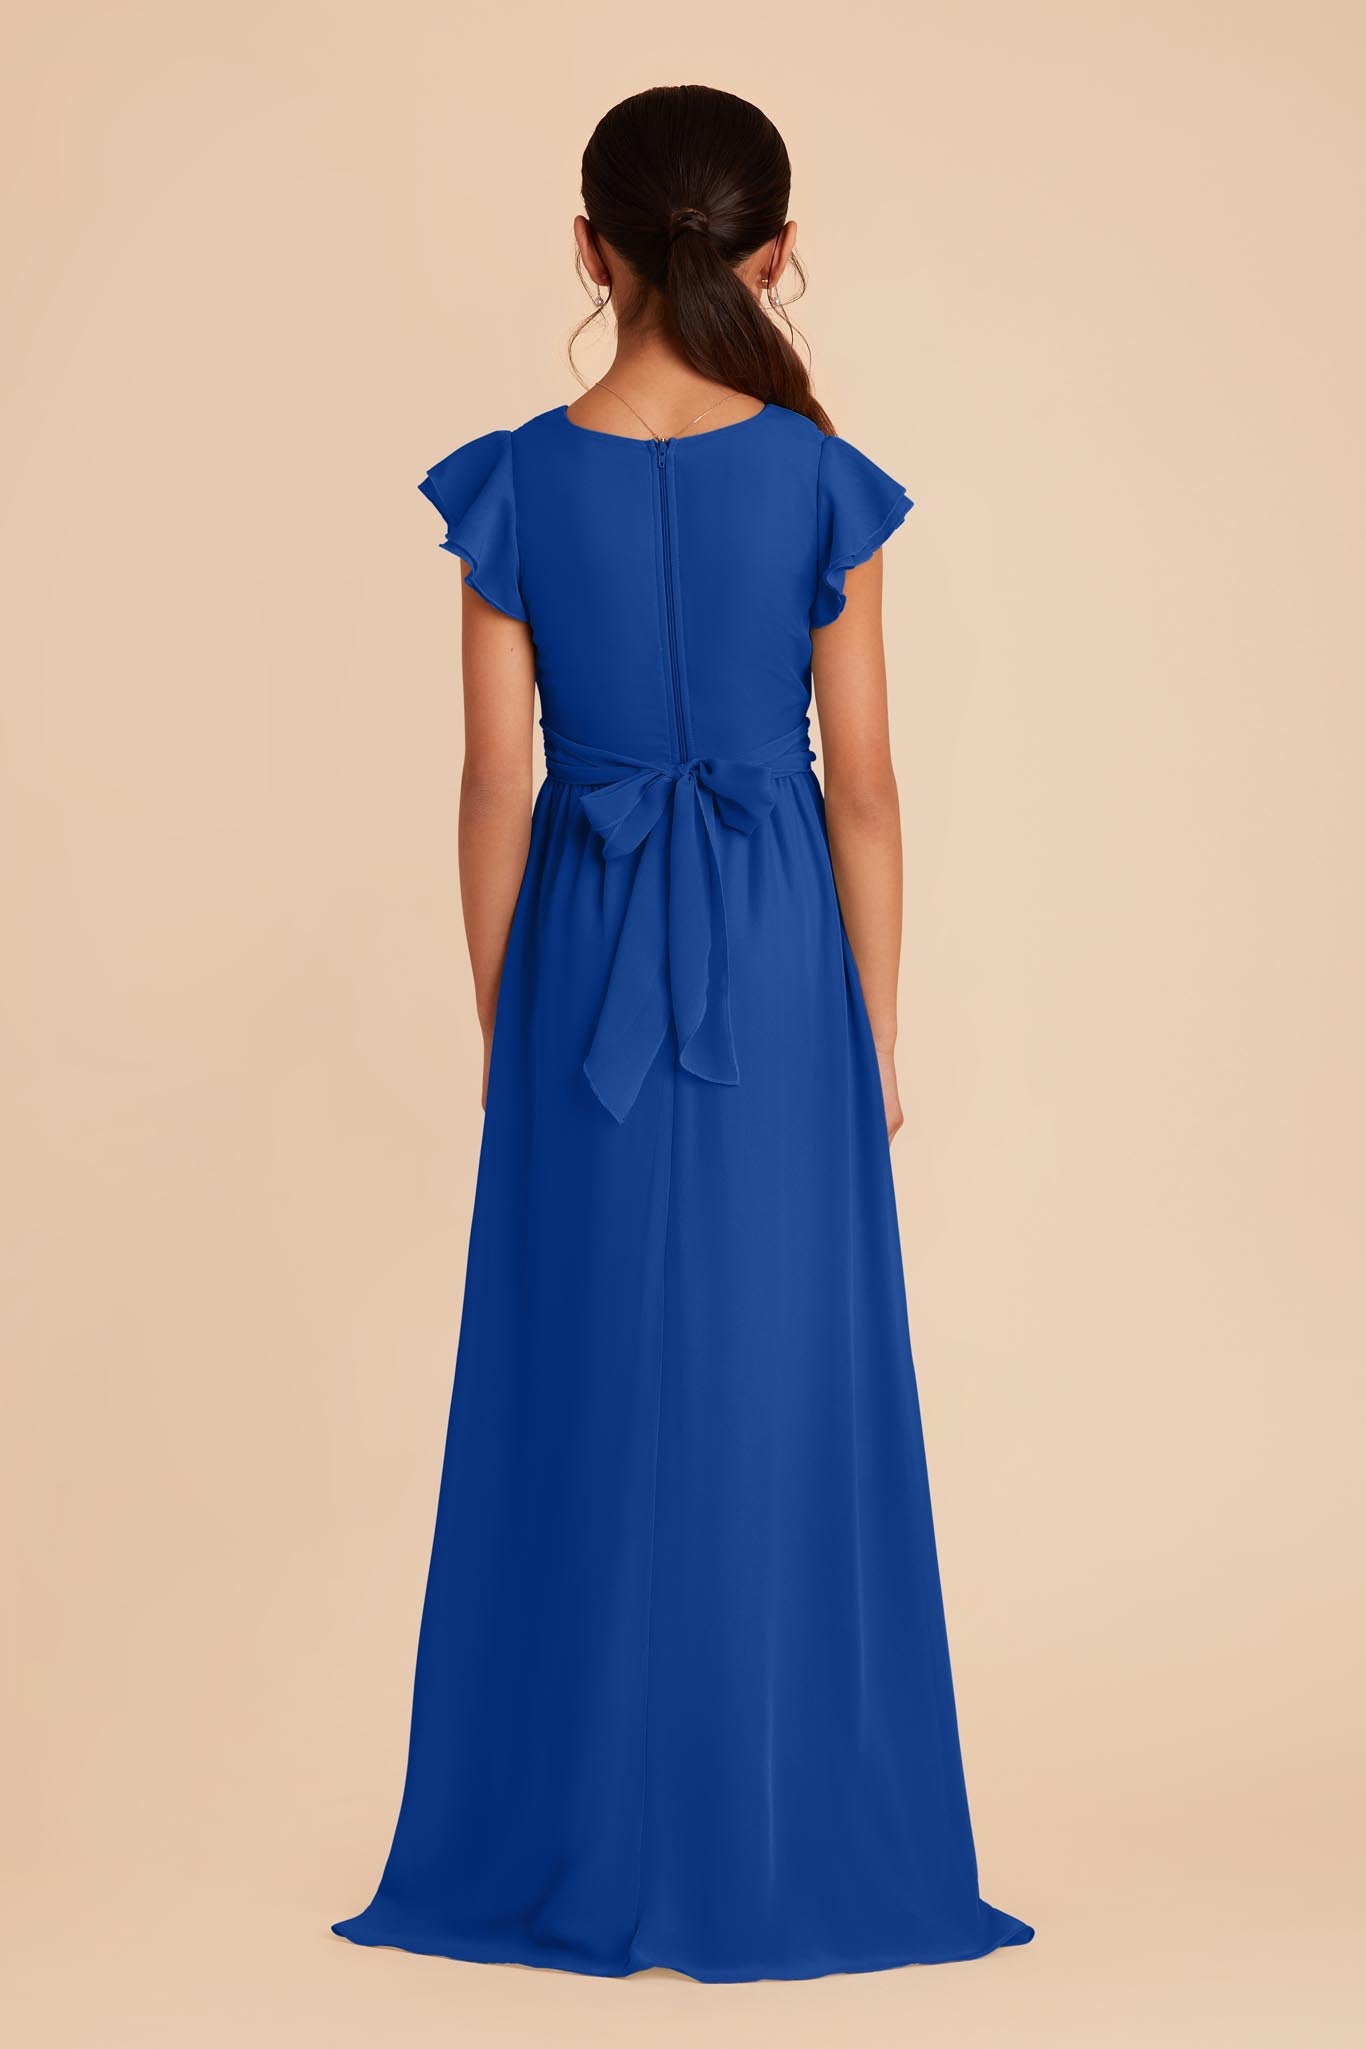 Celine Junior Dress - Cobalt Blue